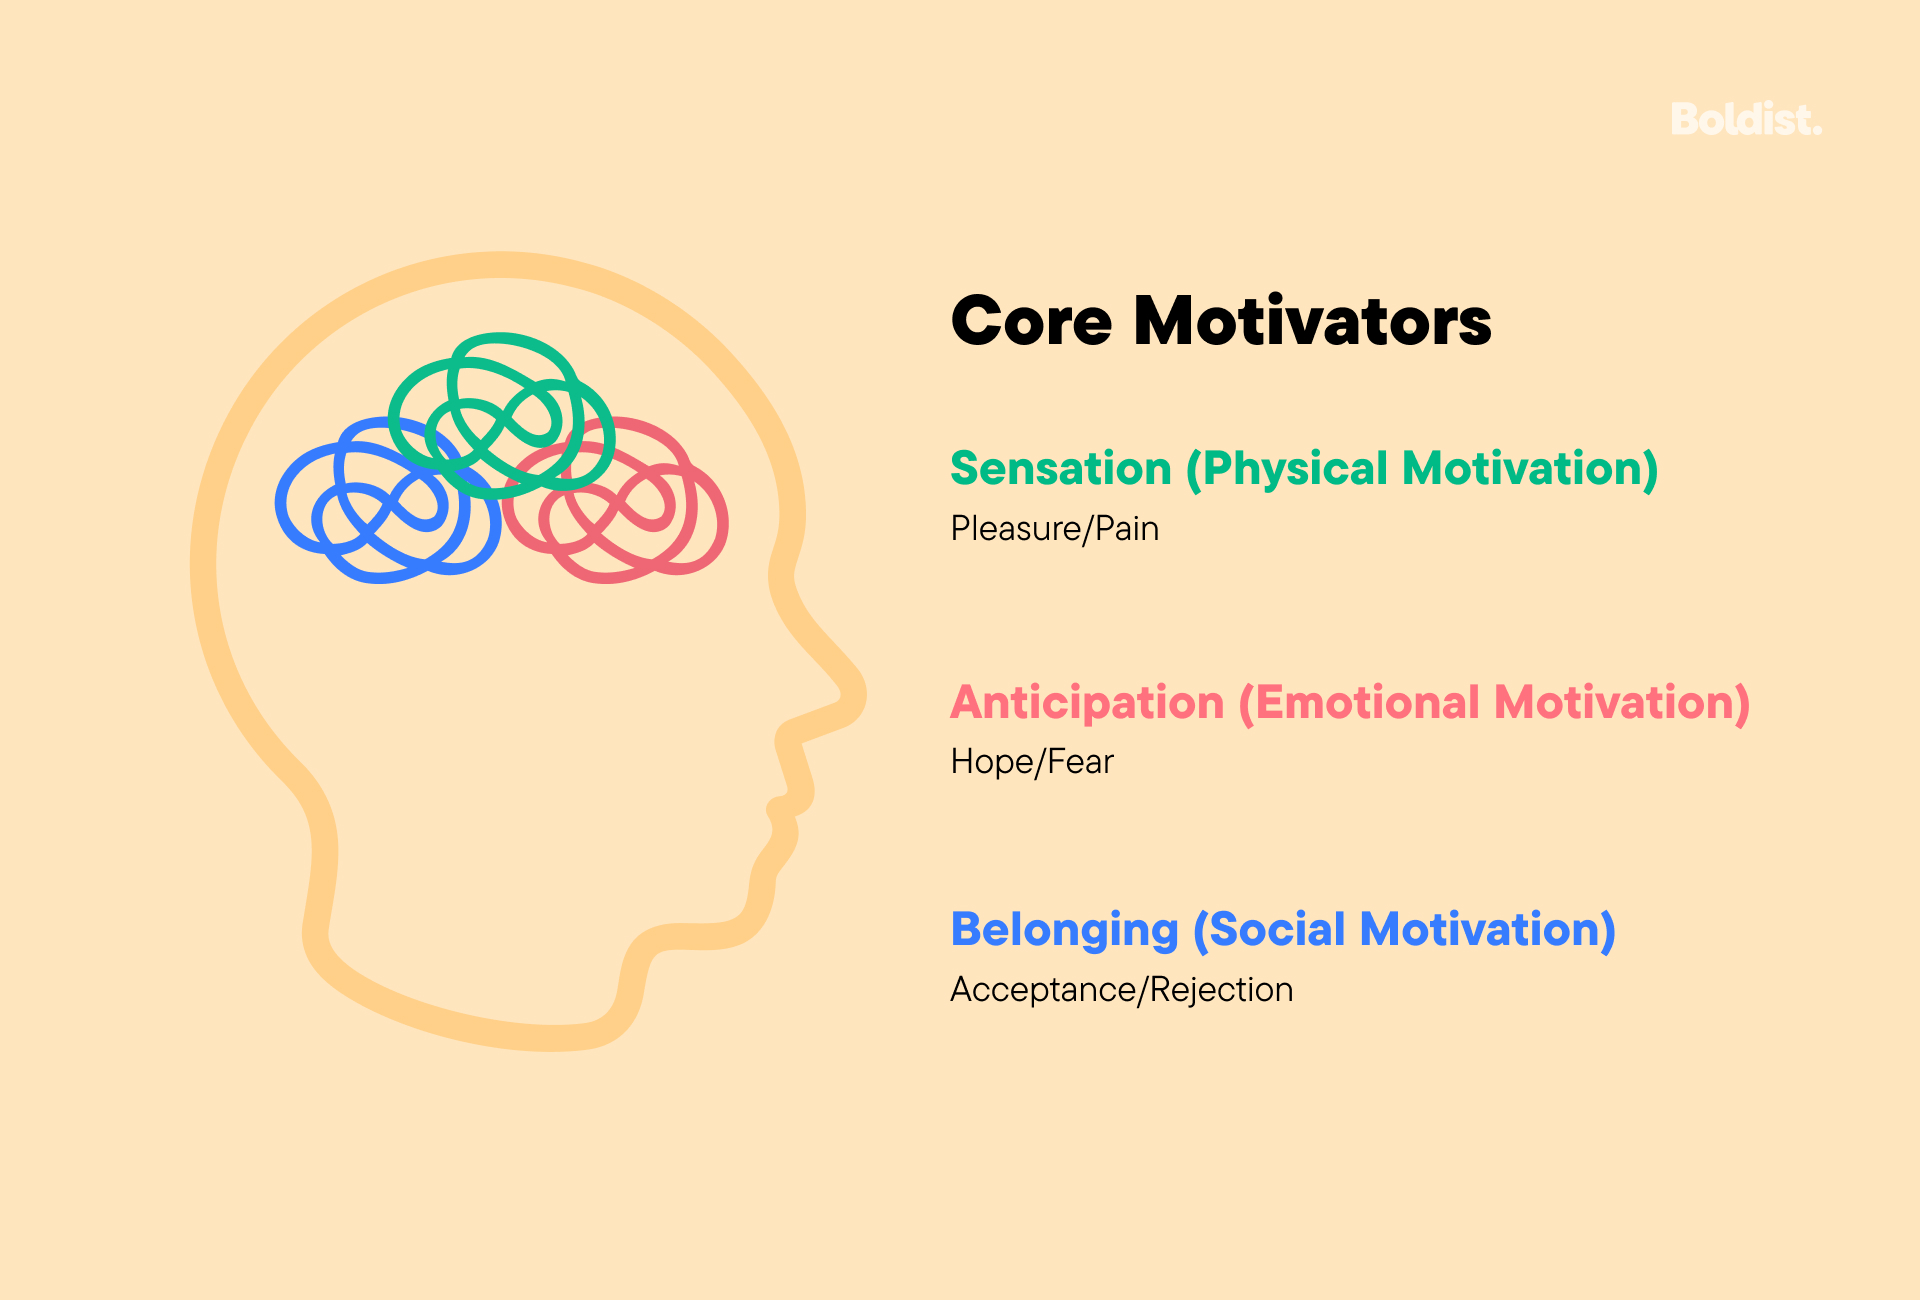 Core Motivators: Sensation (Physical Motivation, including pleasure and pain; Anticipation (emotional motivation) including hope and fear; and Belonging (Social Motivation) including acceptance and rejection.